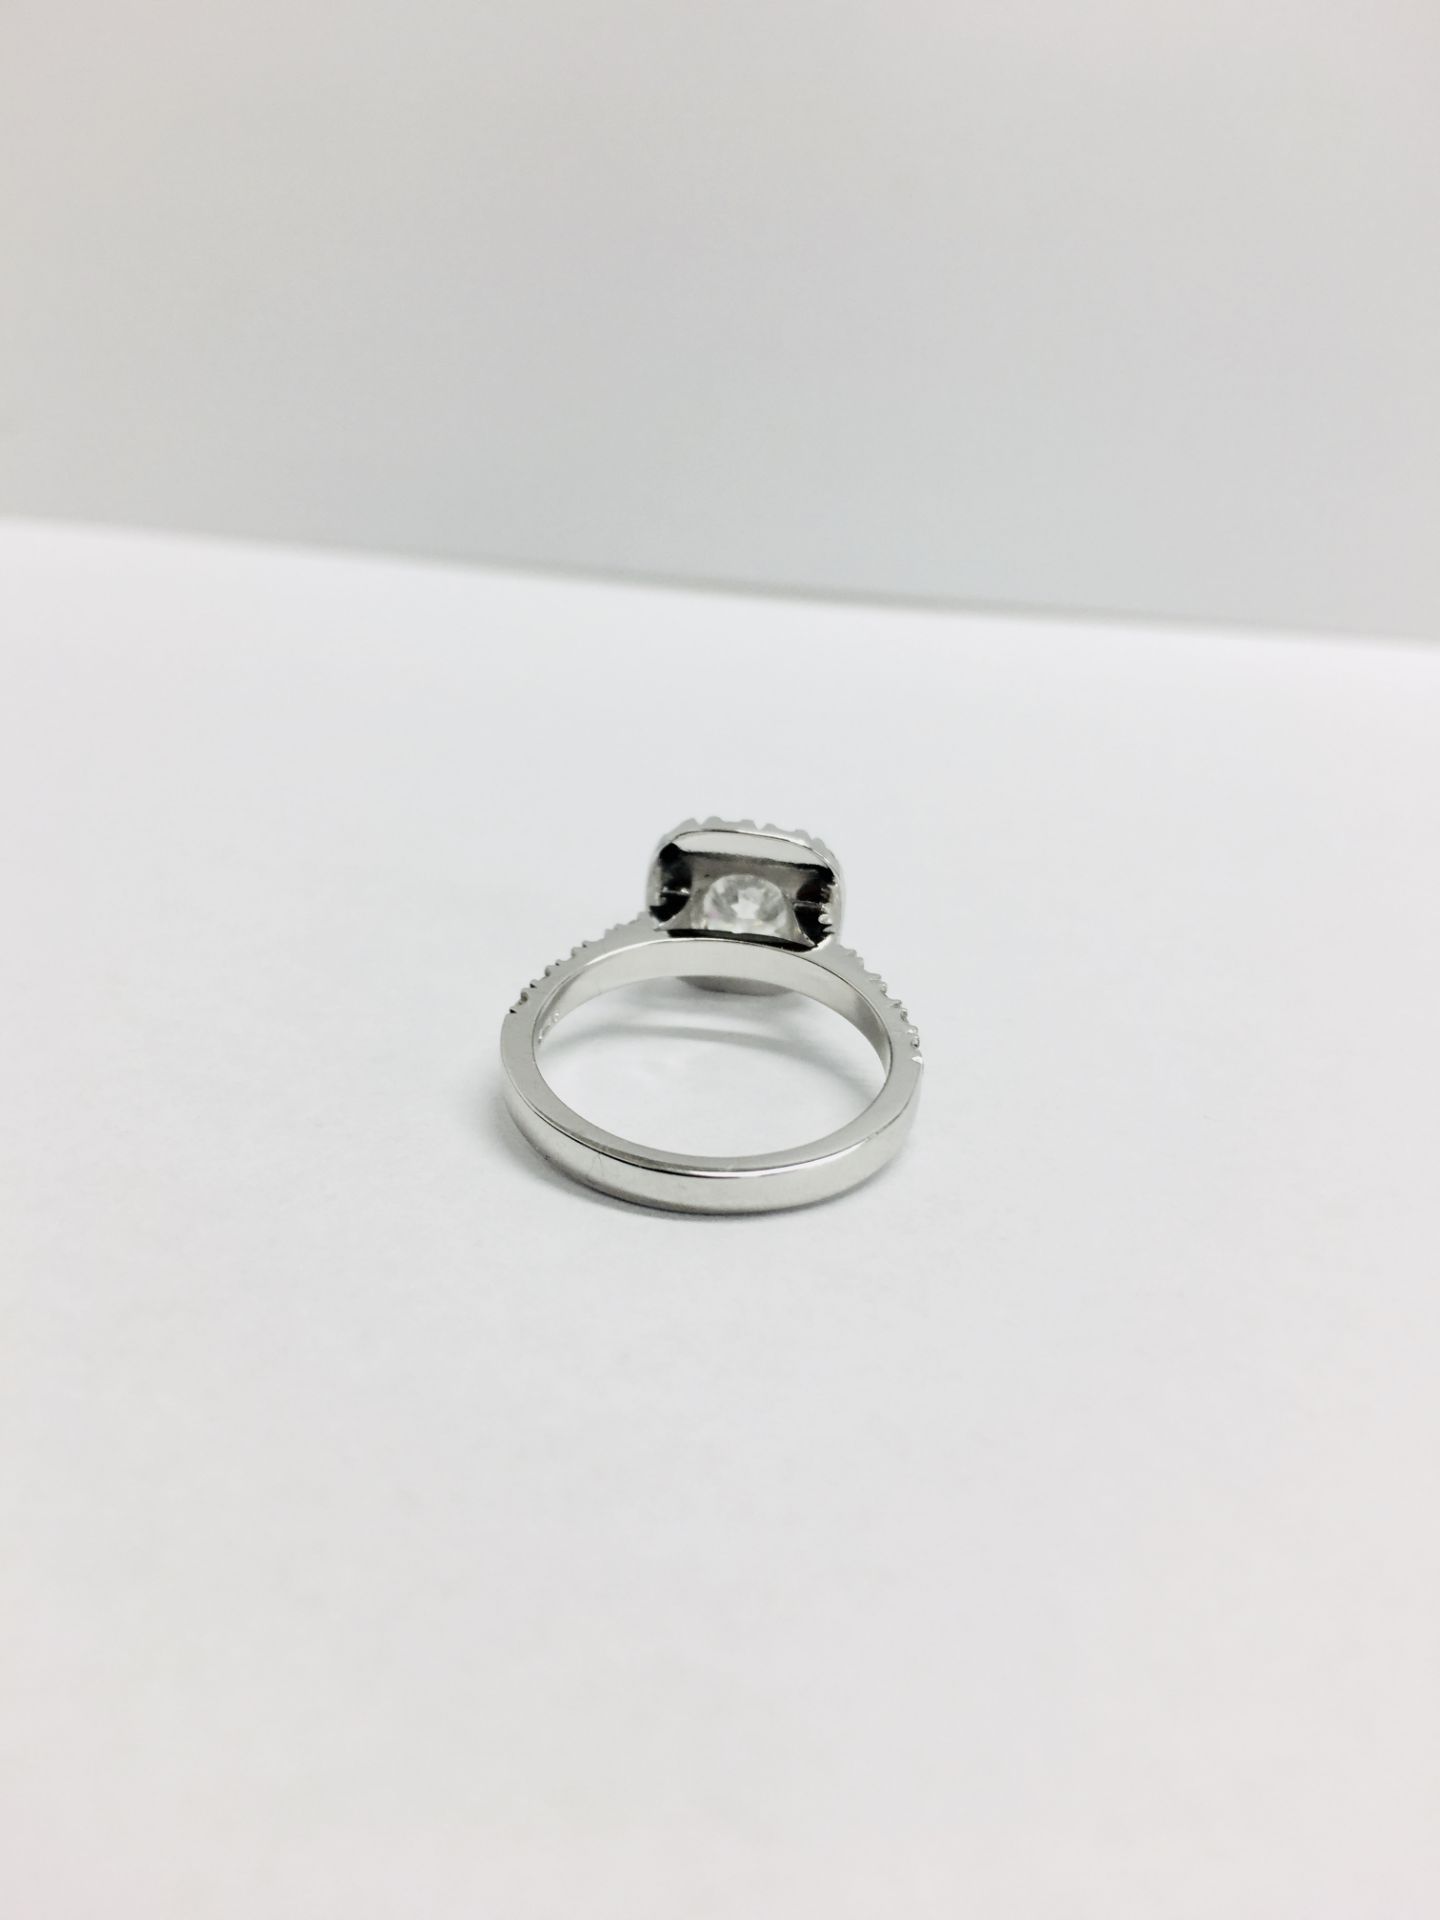 18ct white gold Halo style Diamond ring,0.50ct brilliant cut centre,h colour vs clarity,0.25ct - Image 4 of 6